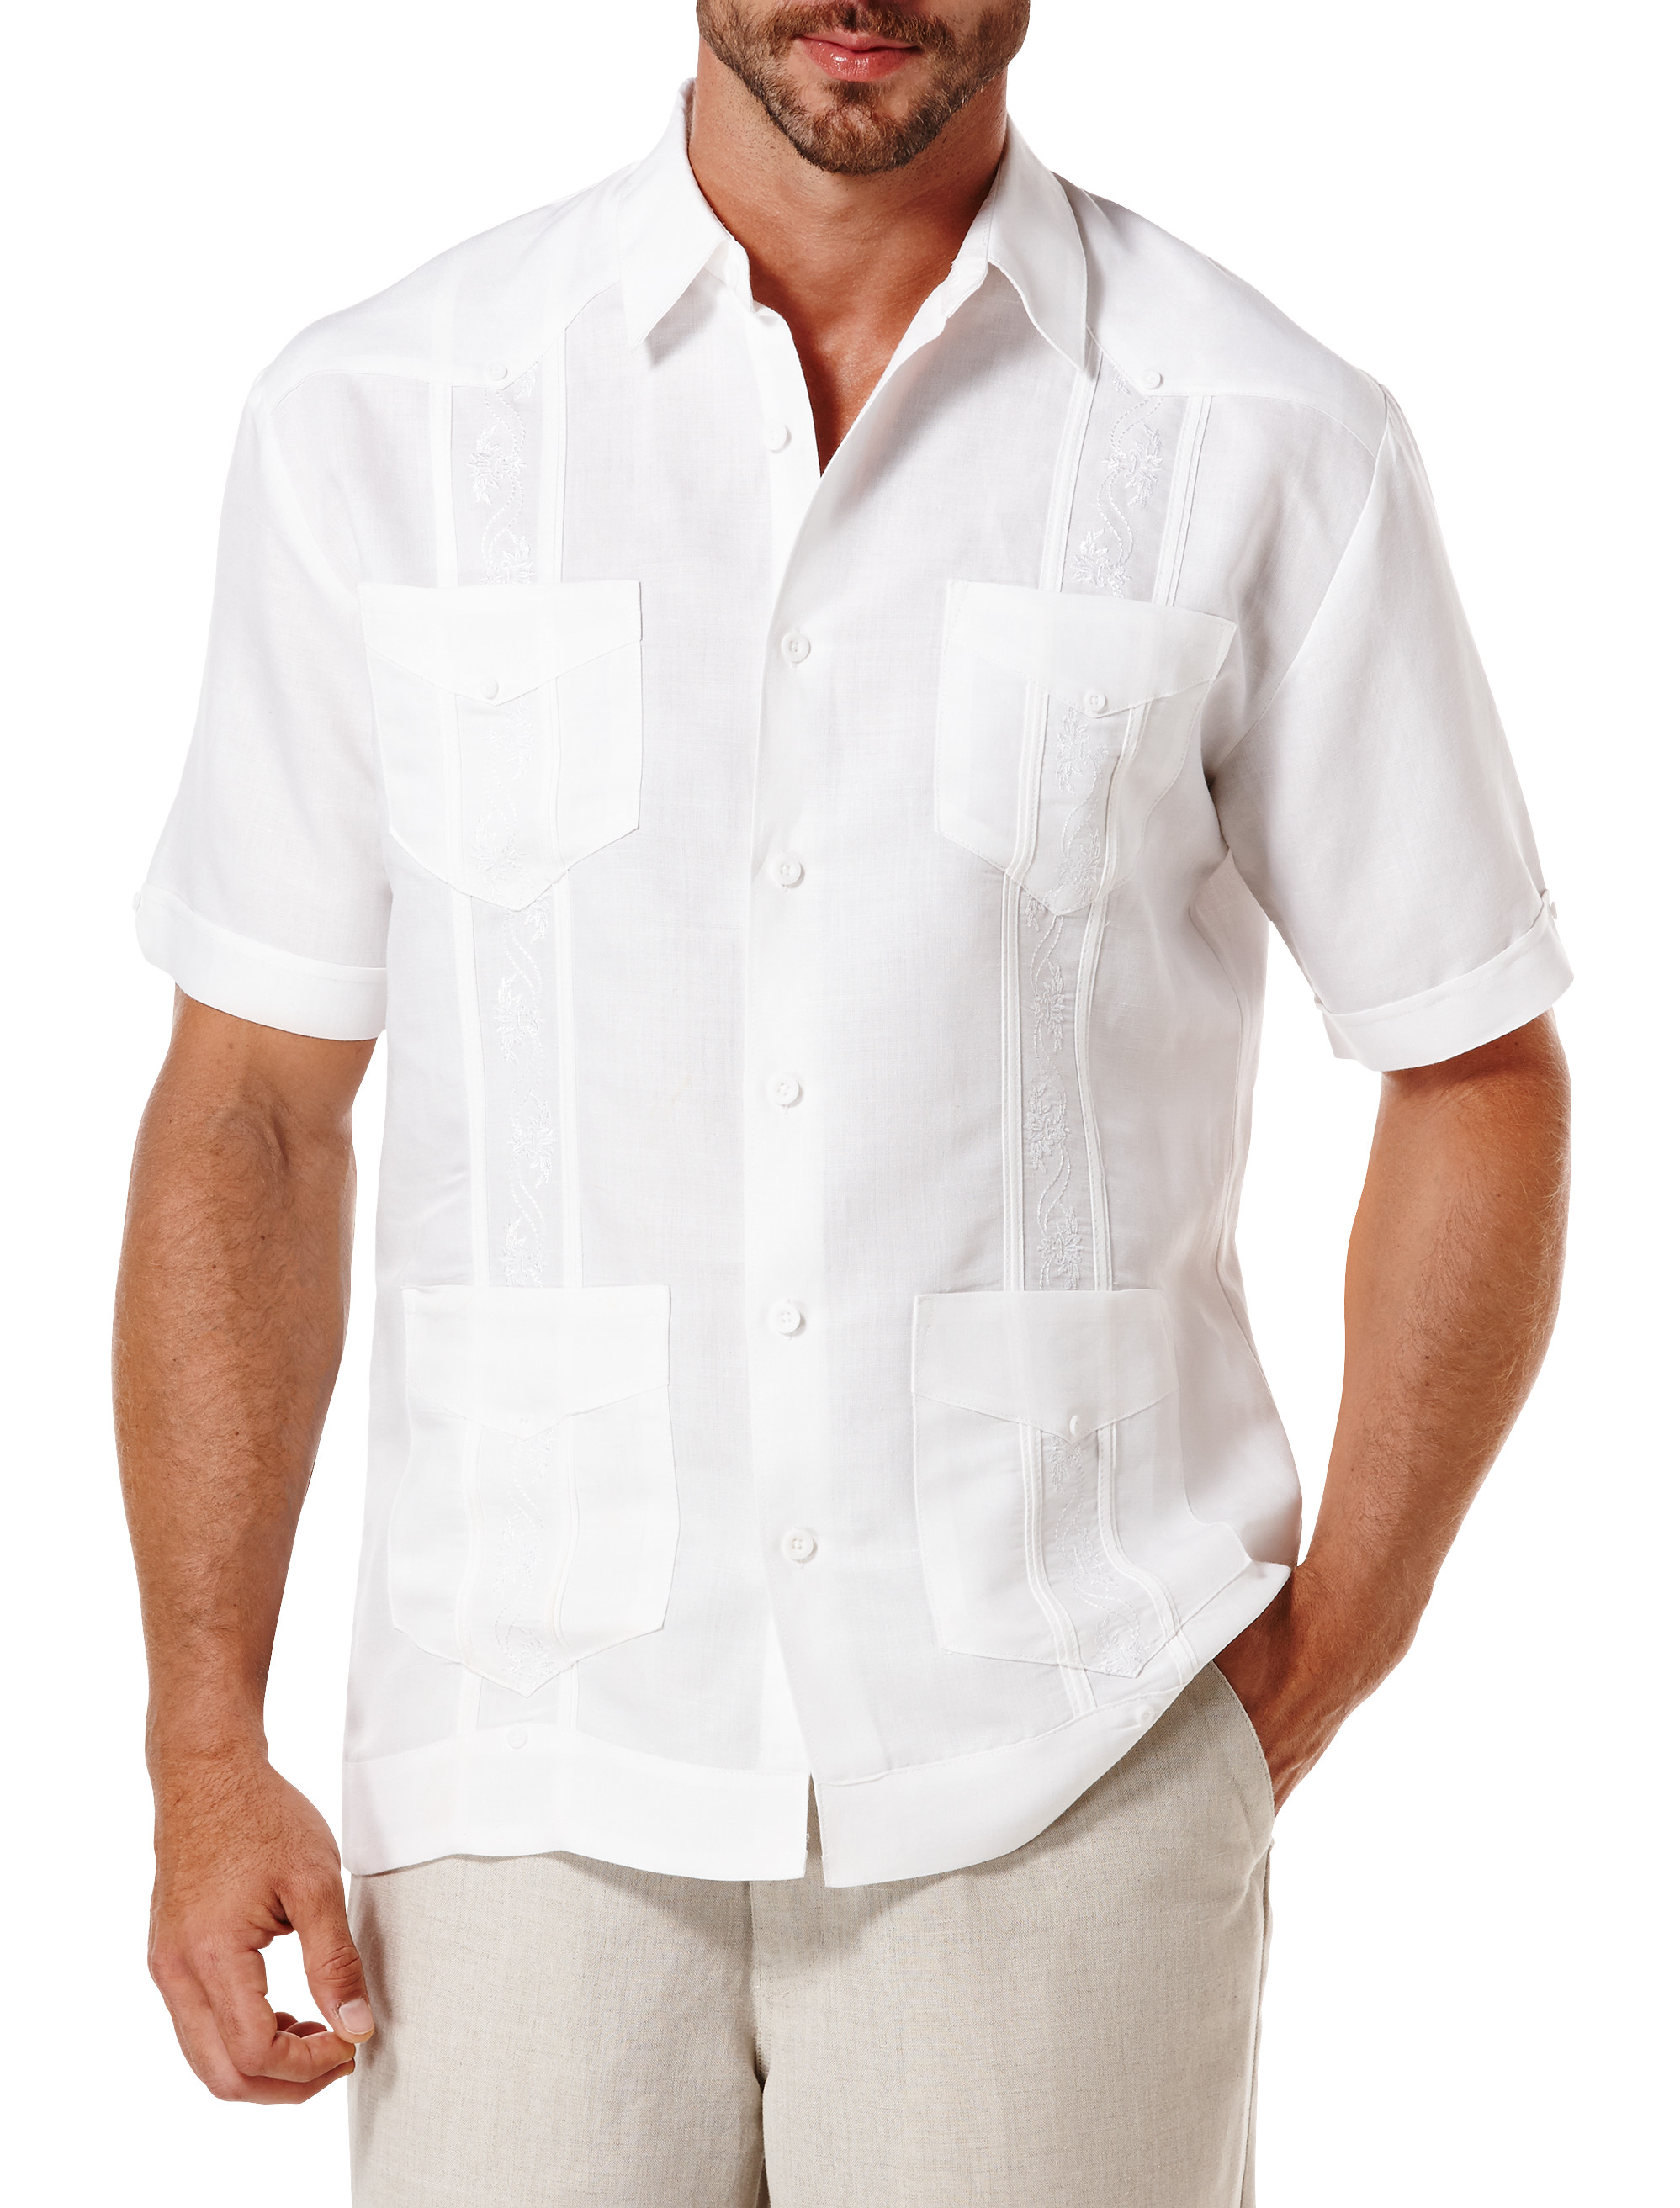 Cubavera Guayabera Shirt Casual Male XL Big & Tall | eBay